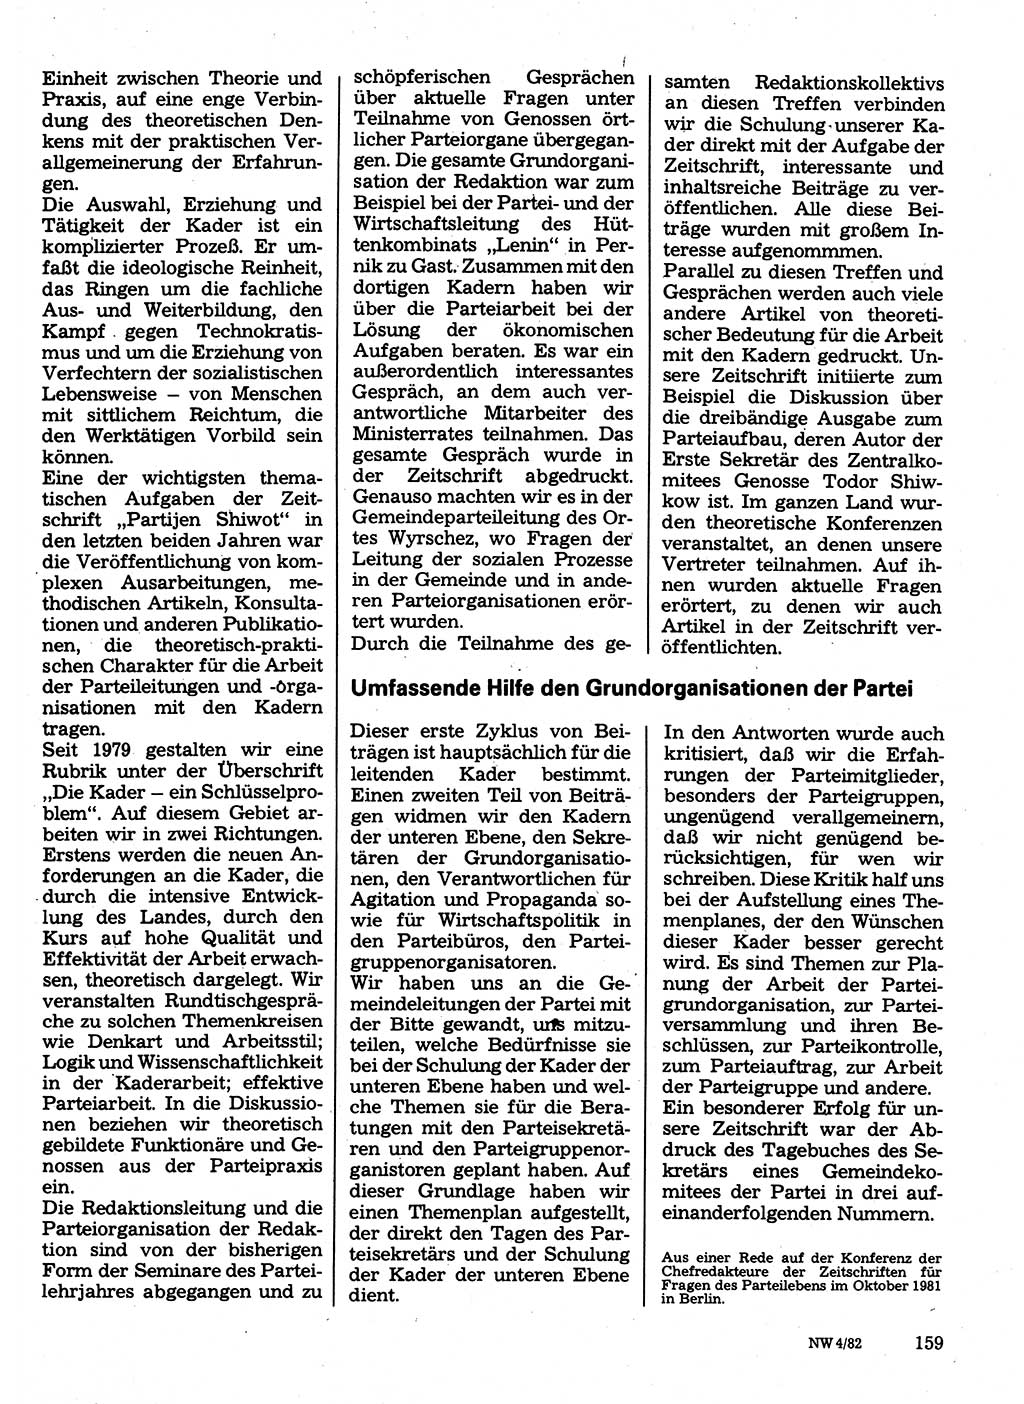 Neuer Weg (NW), Organ des Zentralkomitees (ZK) der SED (Sozialistische Einheitspartei Deutschlands) für Fragen des Parteilebens, 37. Jahrgang [Deutsche Demokratische Republik (DDR)] 1982, Seite 159 (NW ZK SED DDR 1982, S. 159)